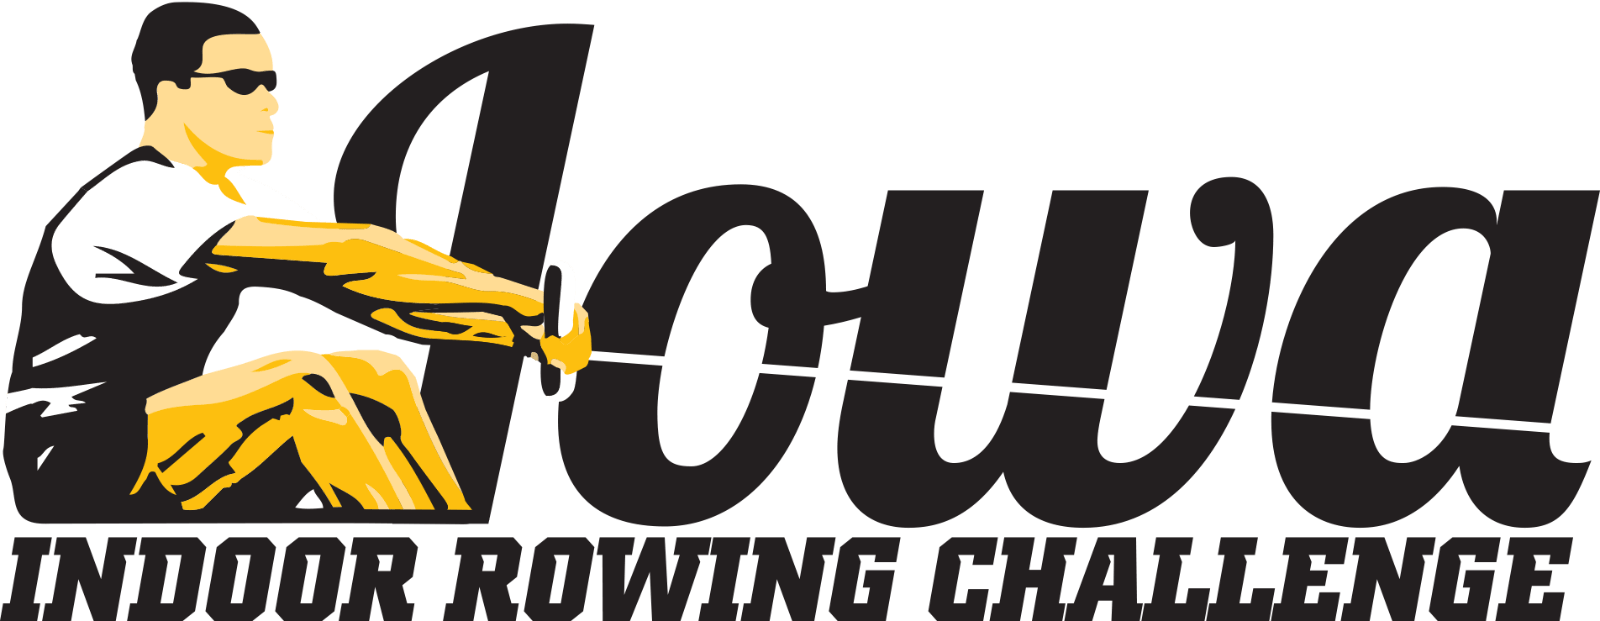 Rowing Logo - Iowa Indoor Rowing Challenge - Overview